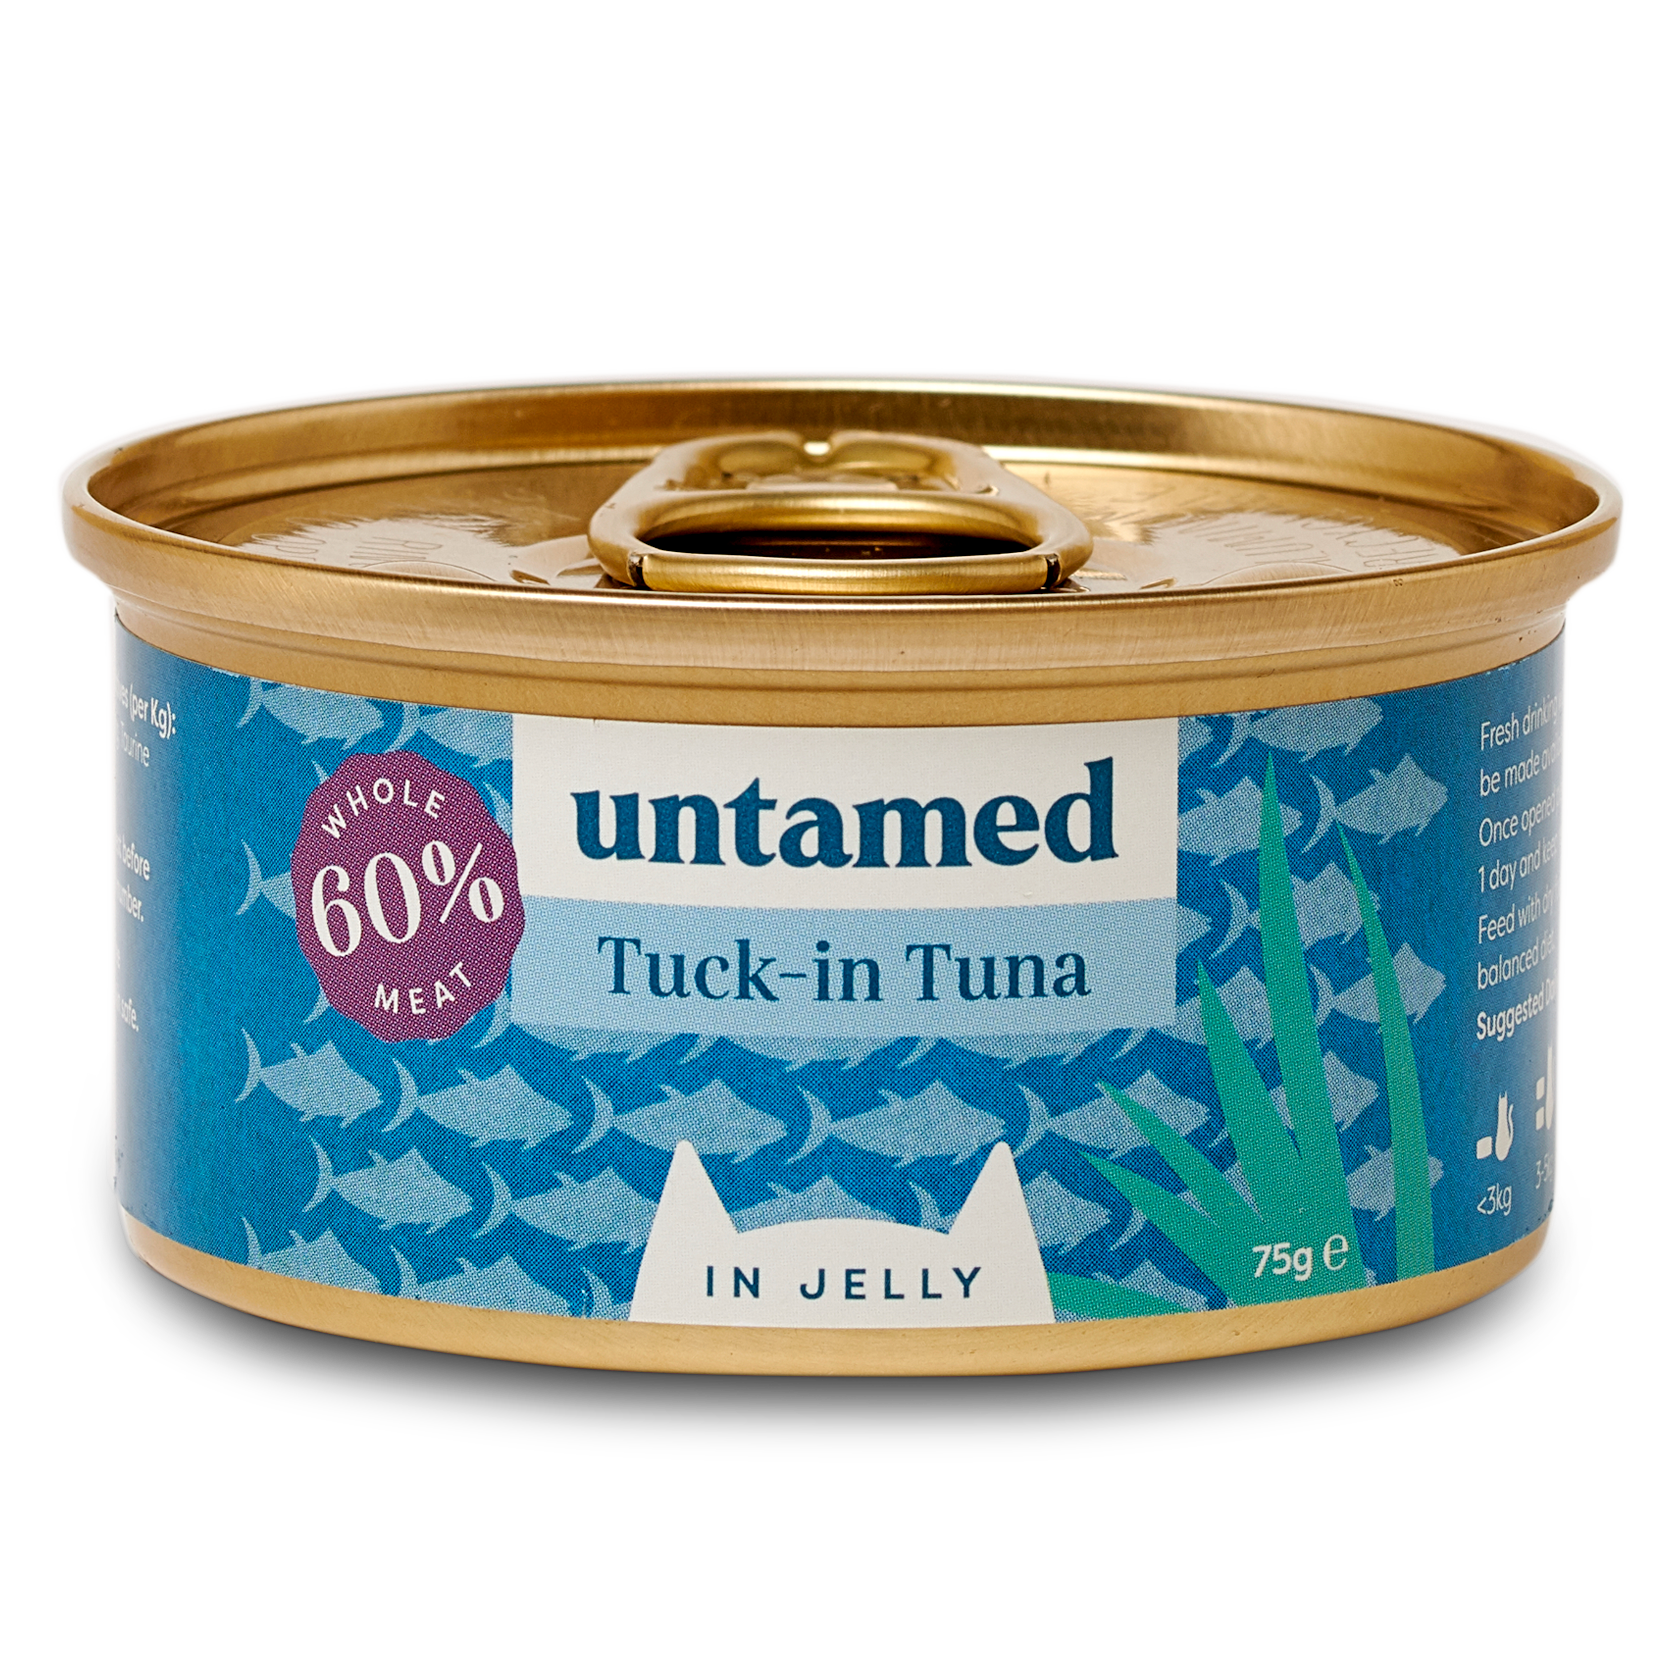 Tuck-in Tuna in Jelly